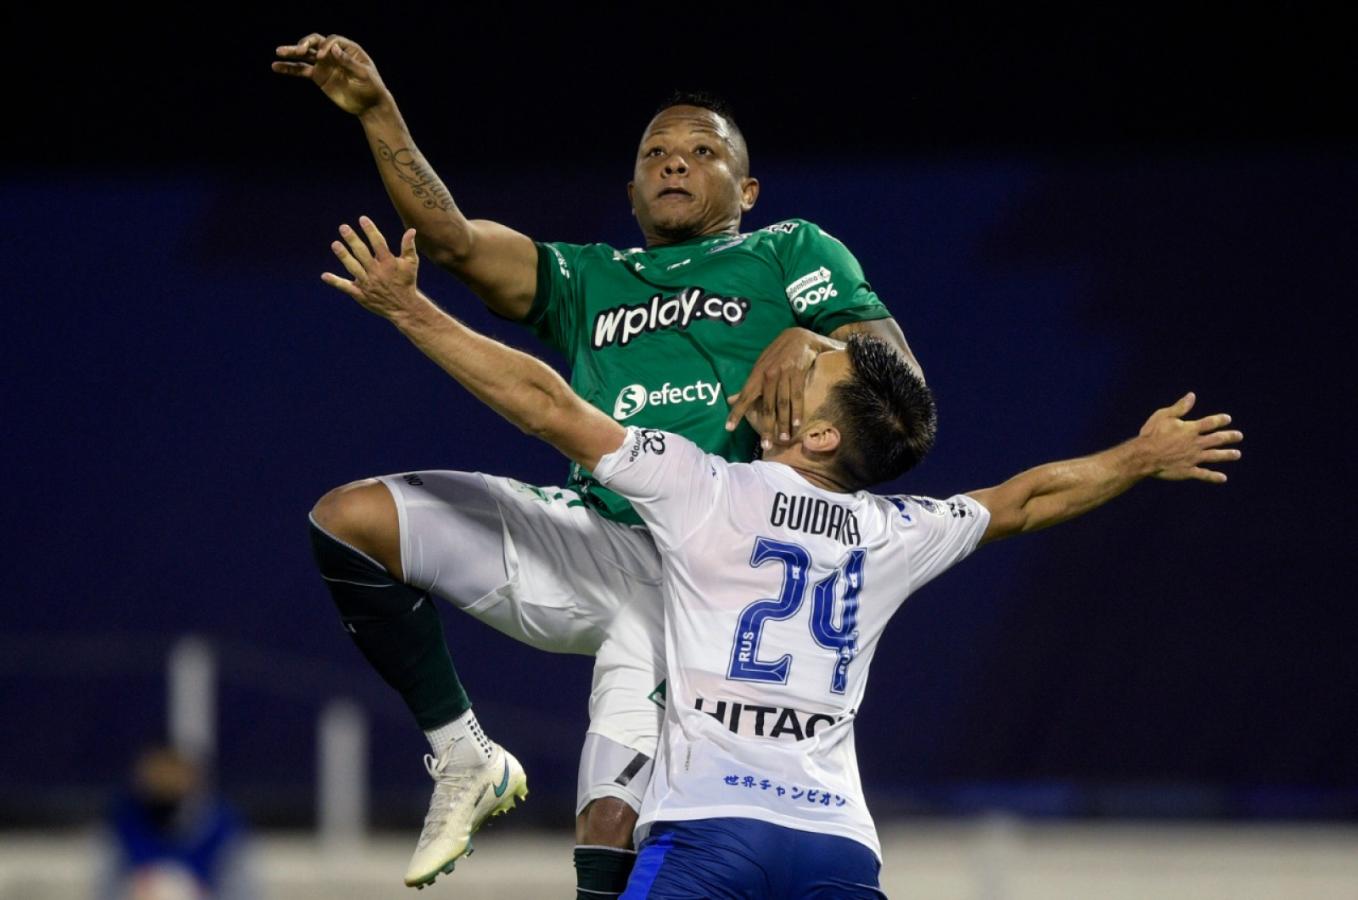 Imagen La jugada polémica. La mano de Vásquez sobre el rostro de Guidara. El VAR anuló el tanto de Deportivo Cali. Foto: Juan Mabromata (POOL / AFP)